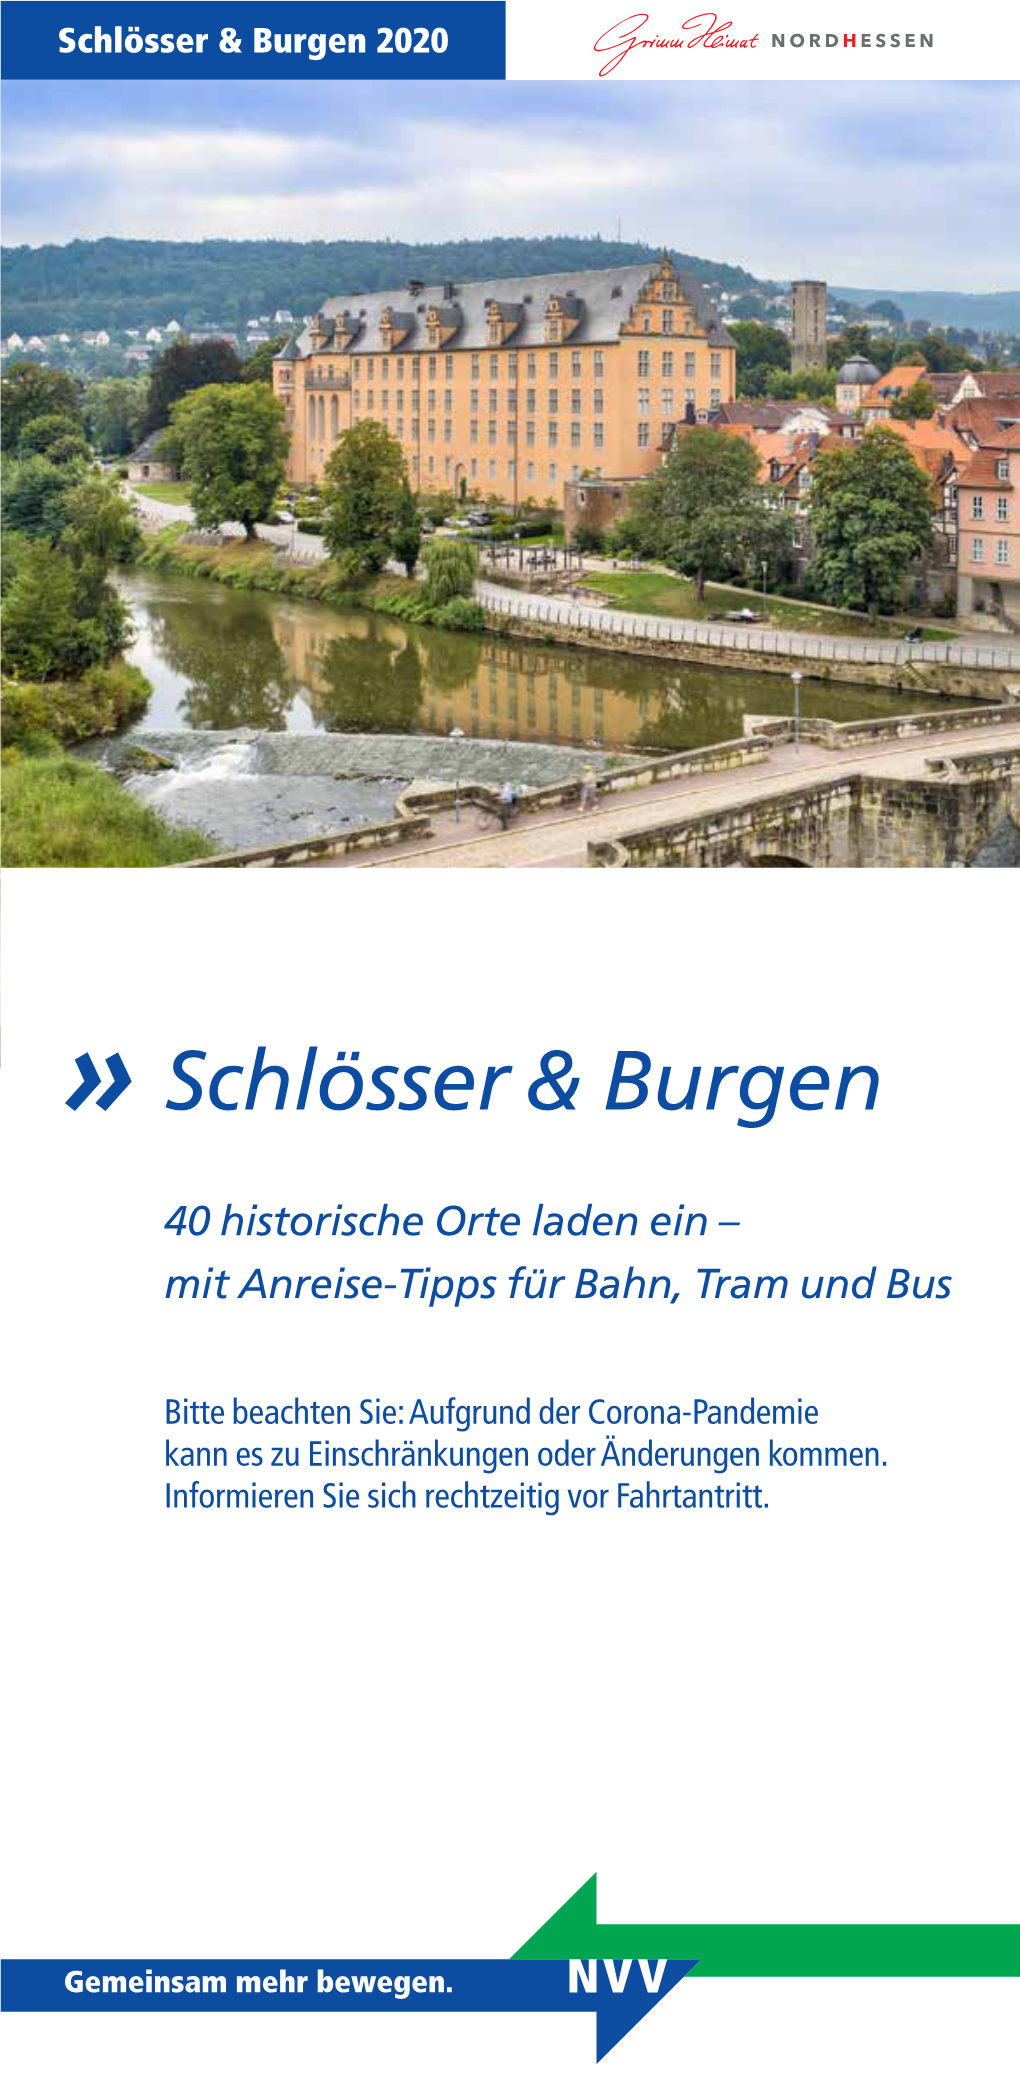 Schlösser & Burgen